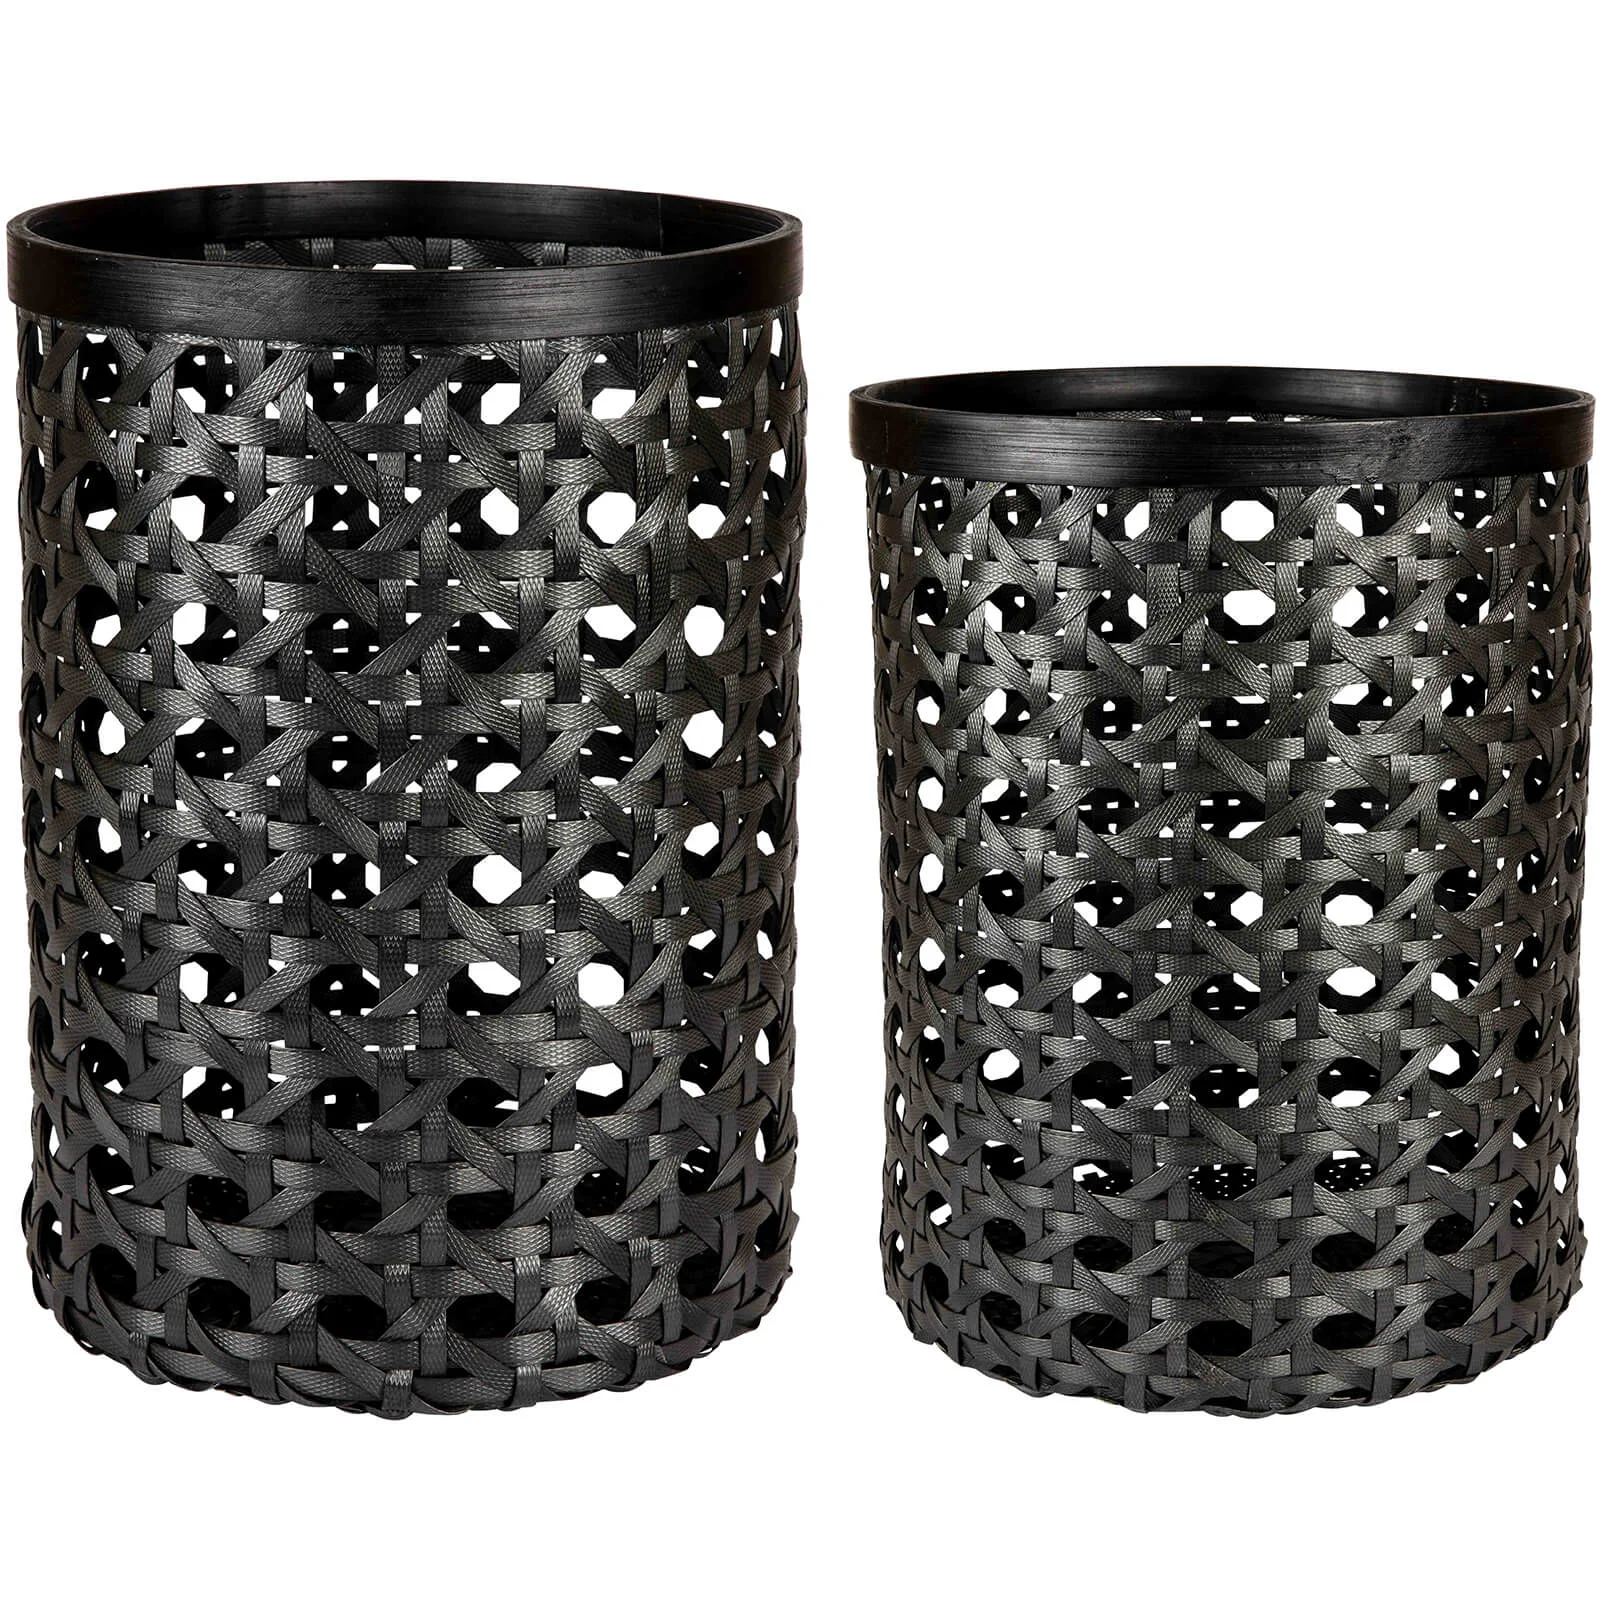 Day Birger et Mikkelsen Home Bamboo Basket - Black (Set of 2) Image 1